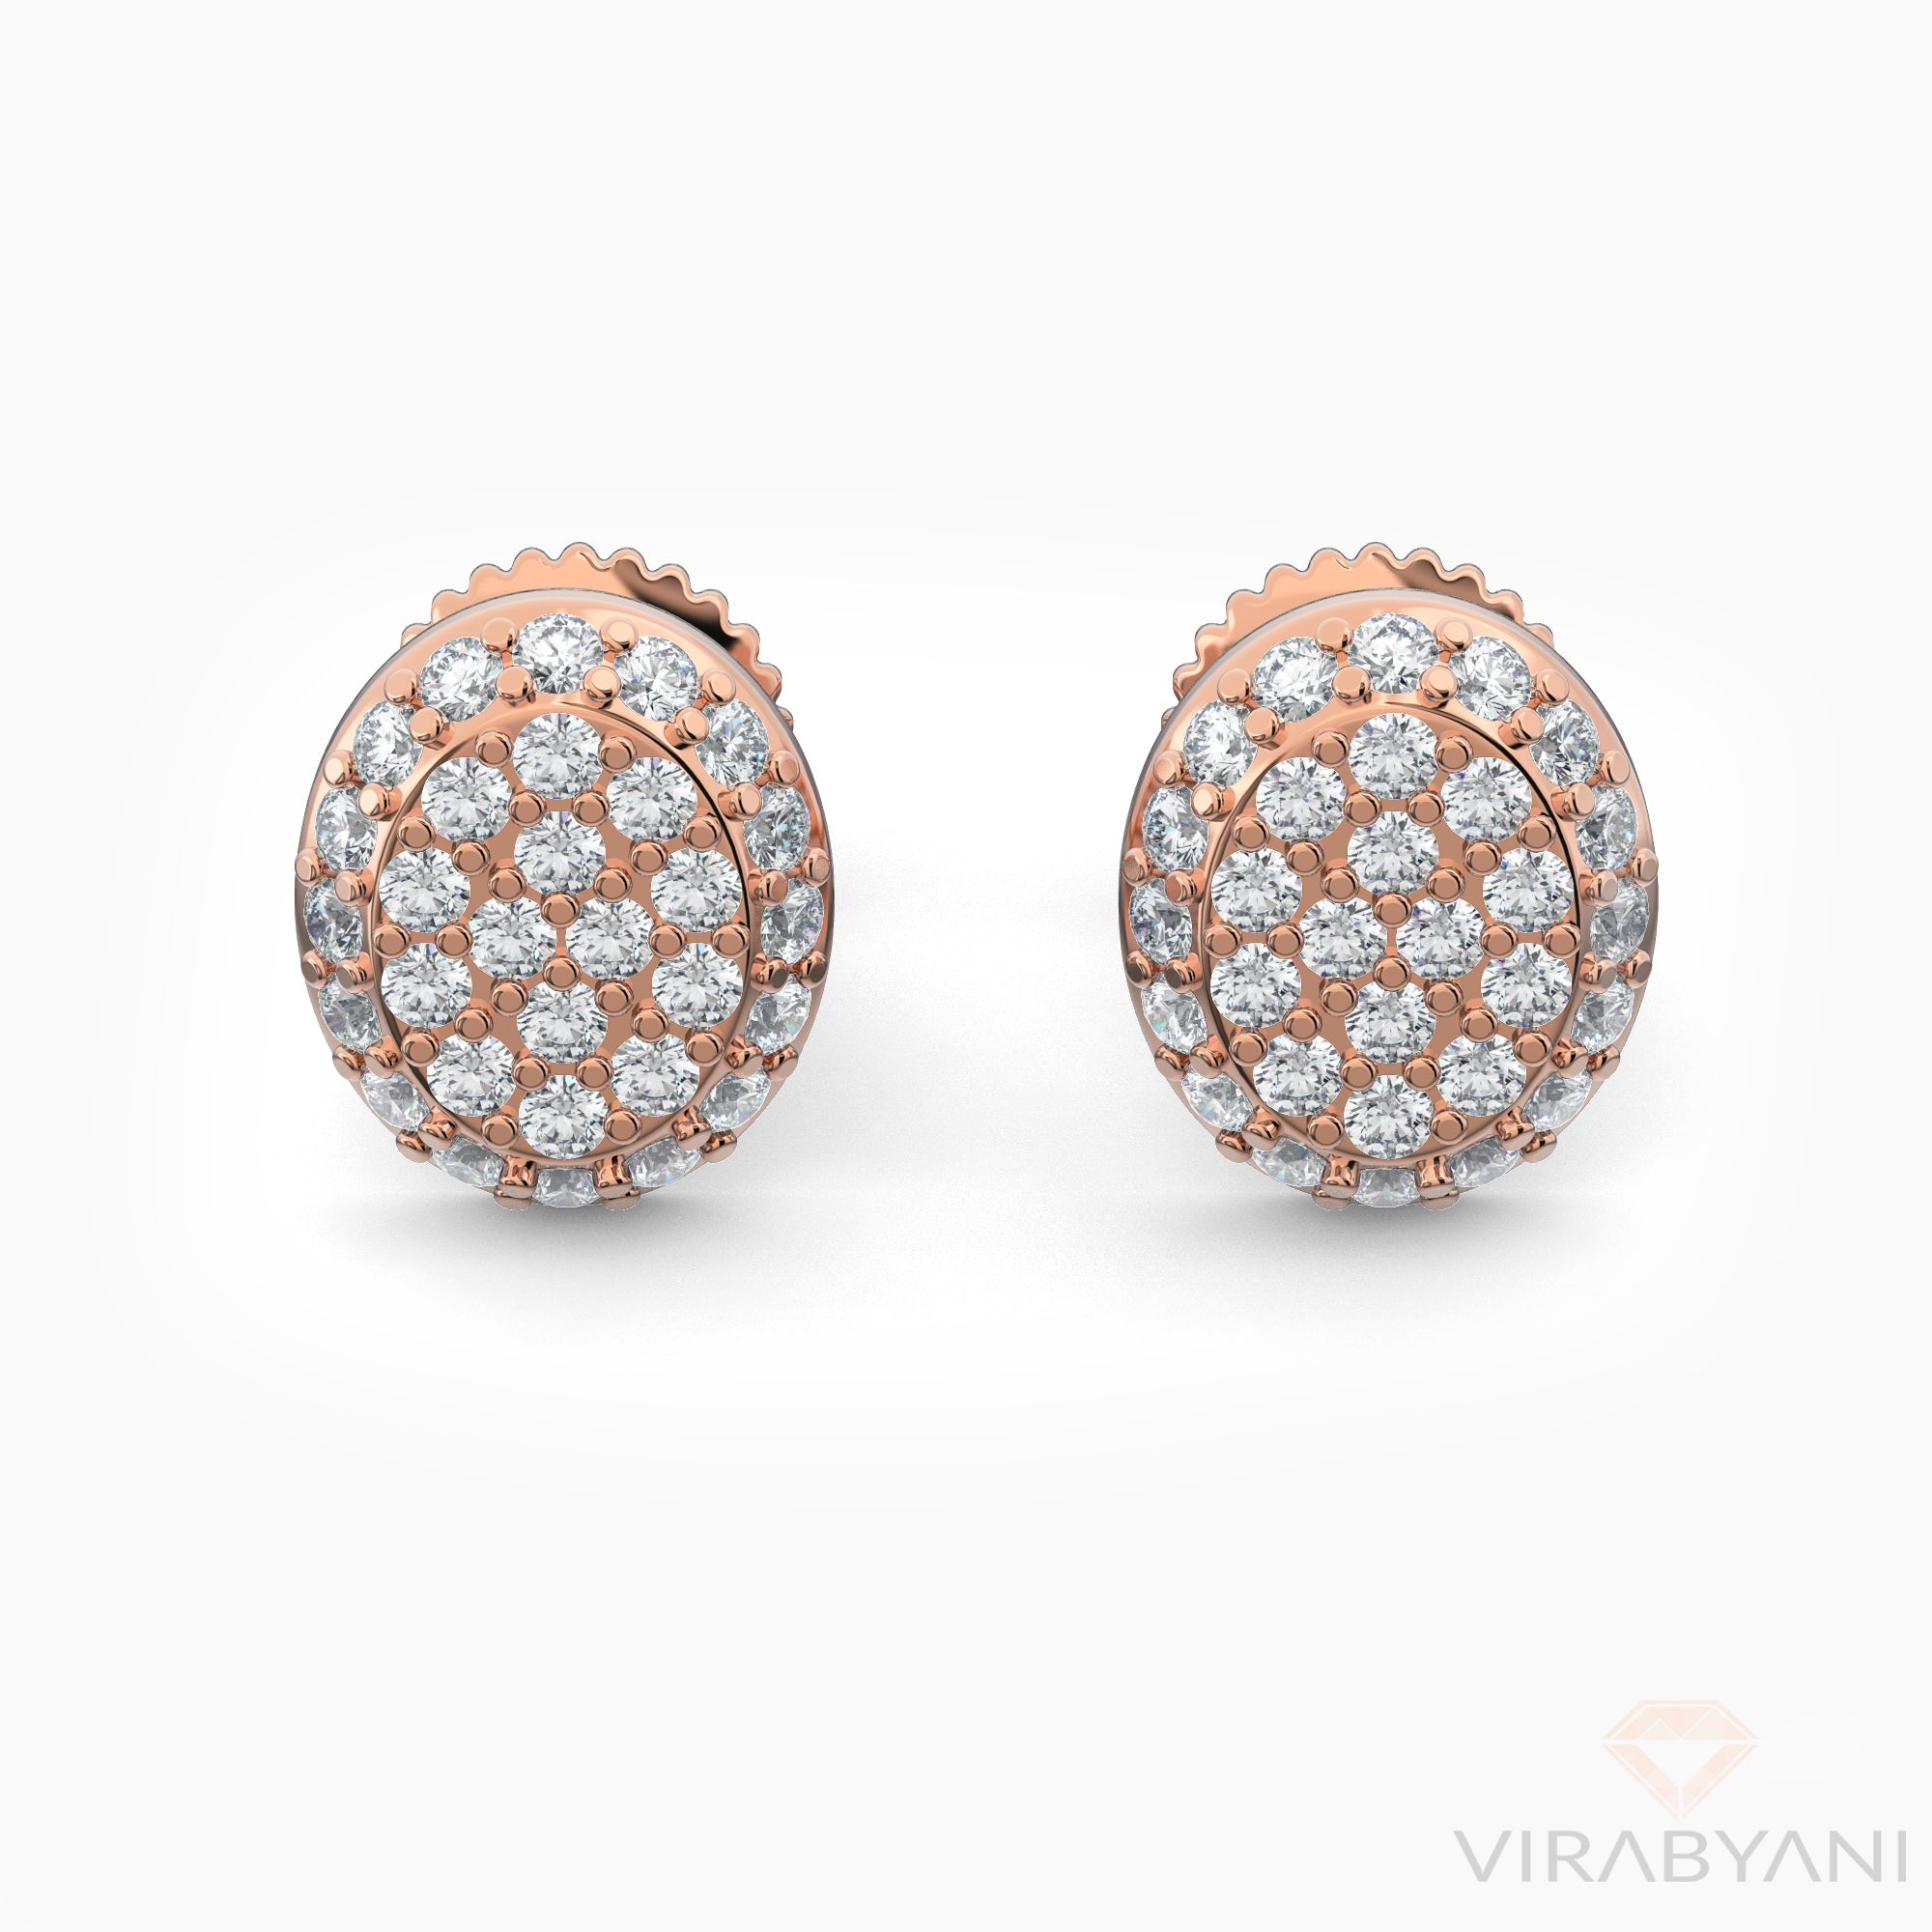 Oval Shaped AMoré Pavé Stud Earrings With 0.50 ct. Diamonds